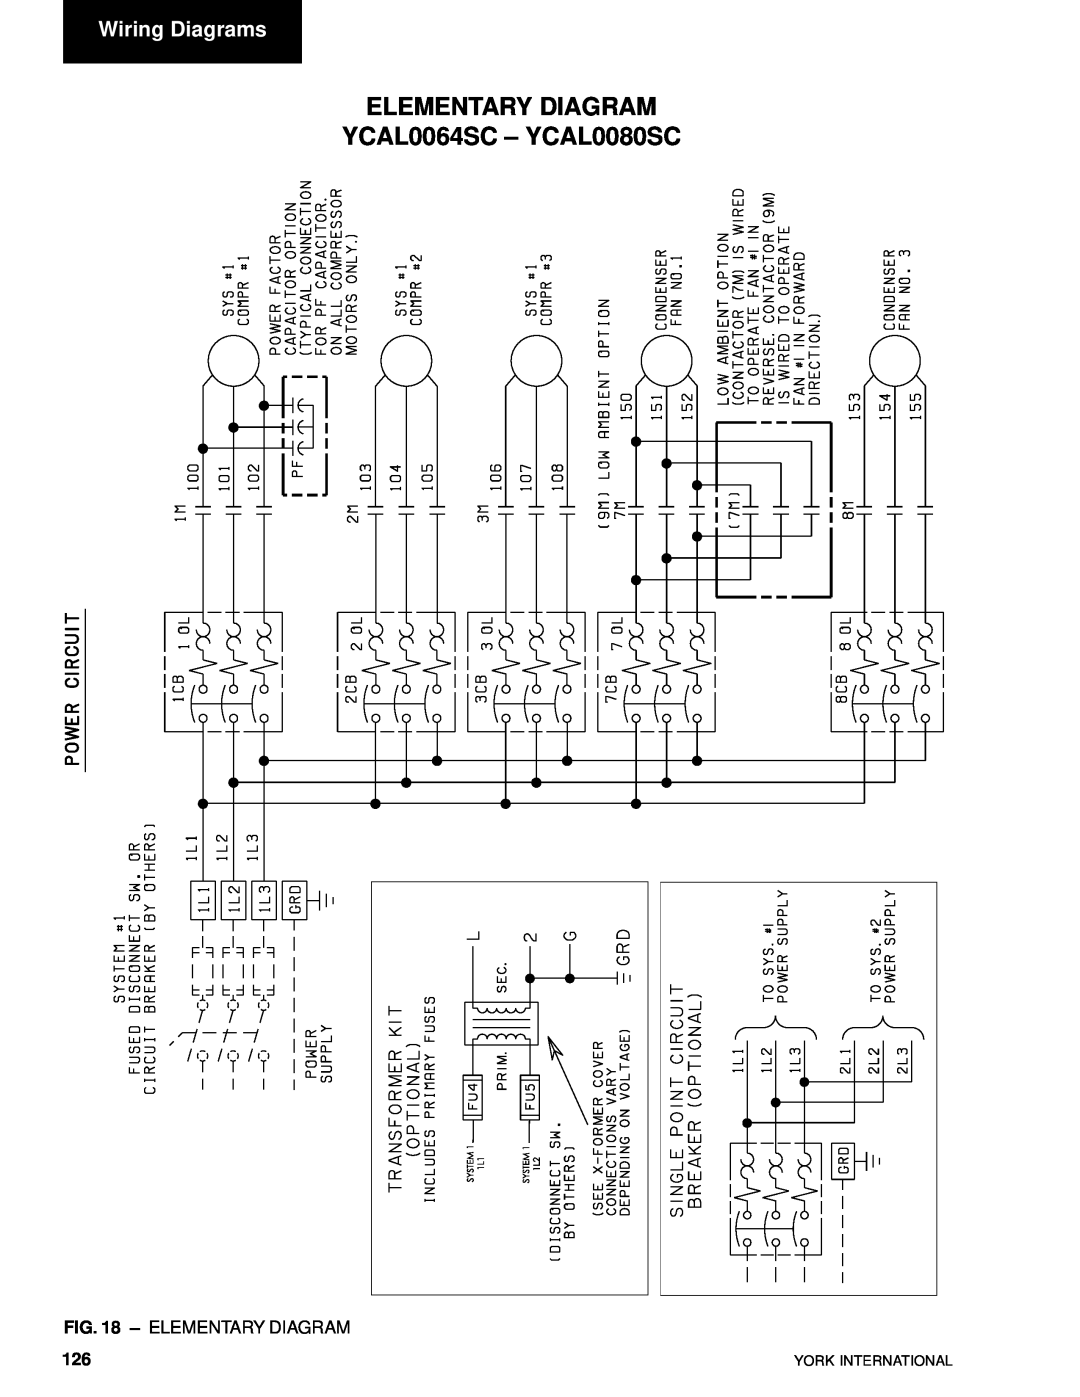 York YCAL0014SC manual ELEMENTARY DIAGRAM YCAL0064SC – YCAL0080SC, Wiring Diagrams, Elementary Diagram 